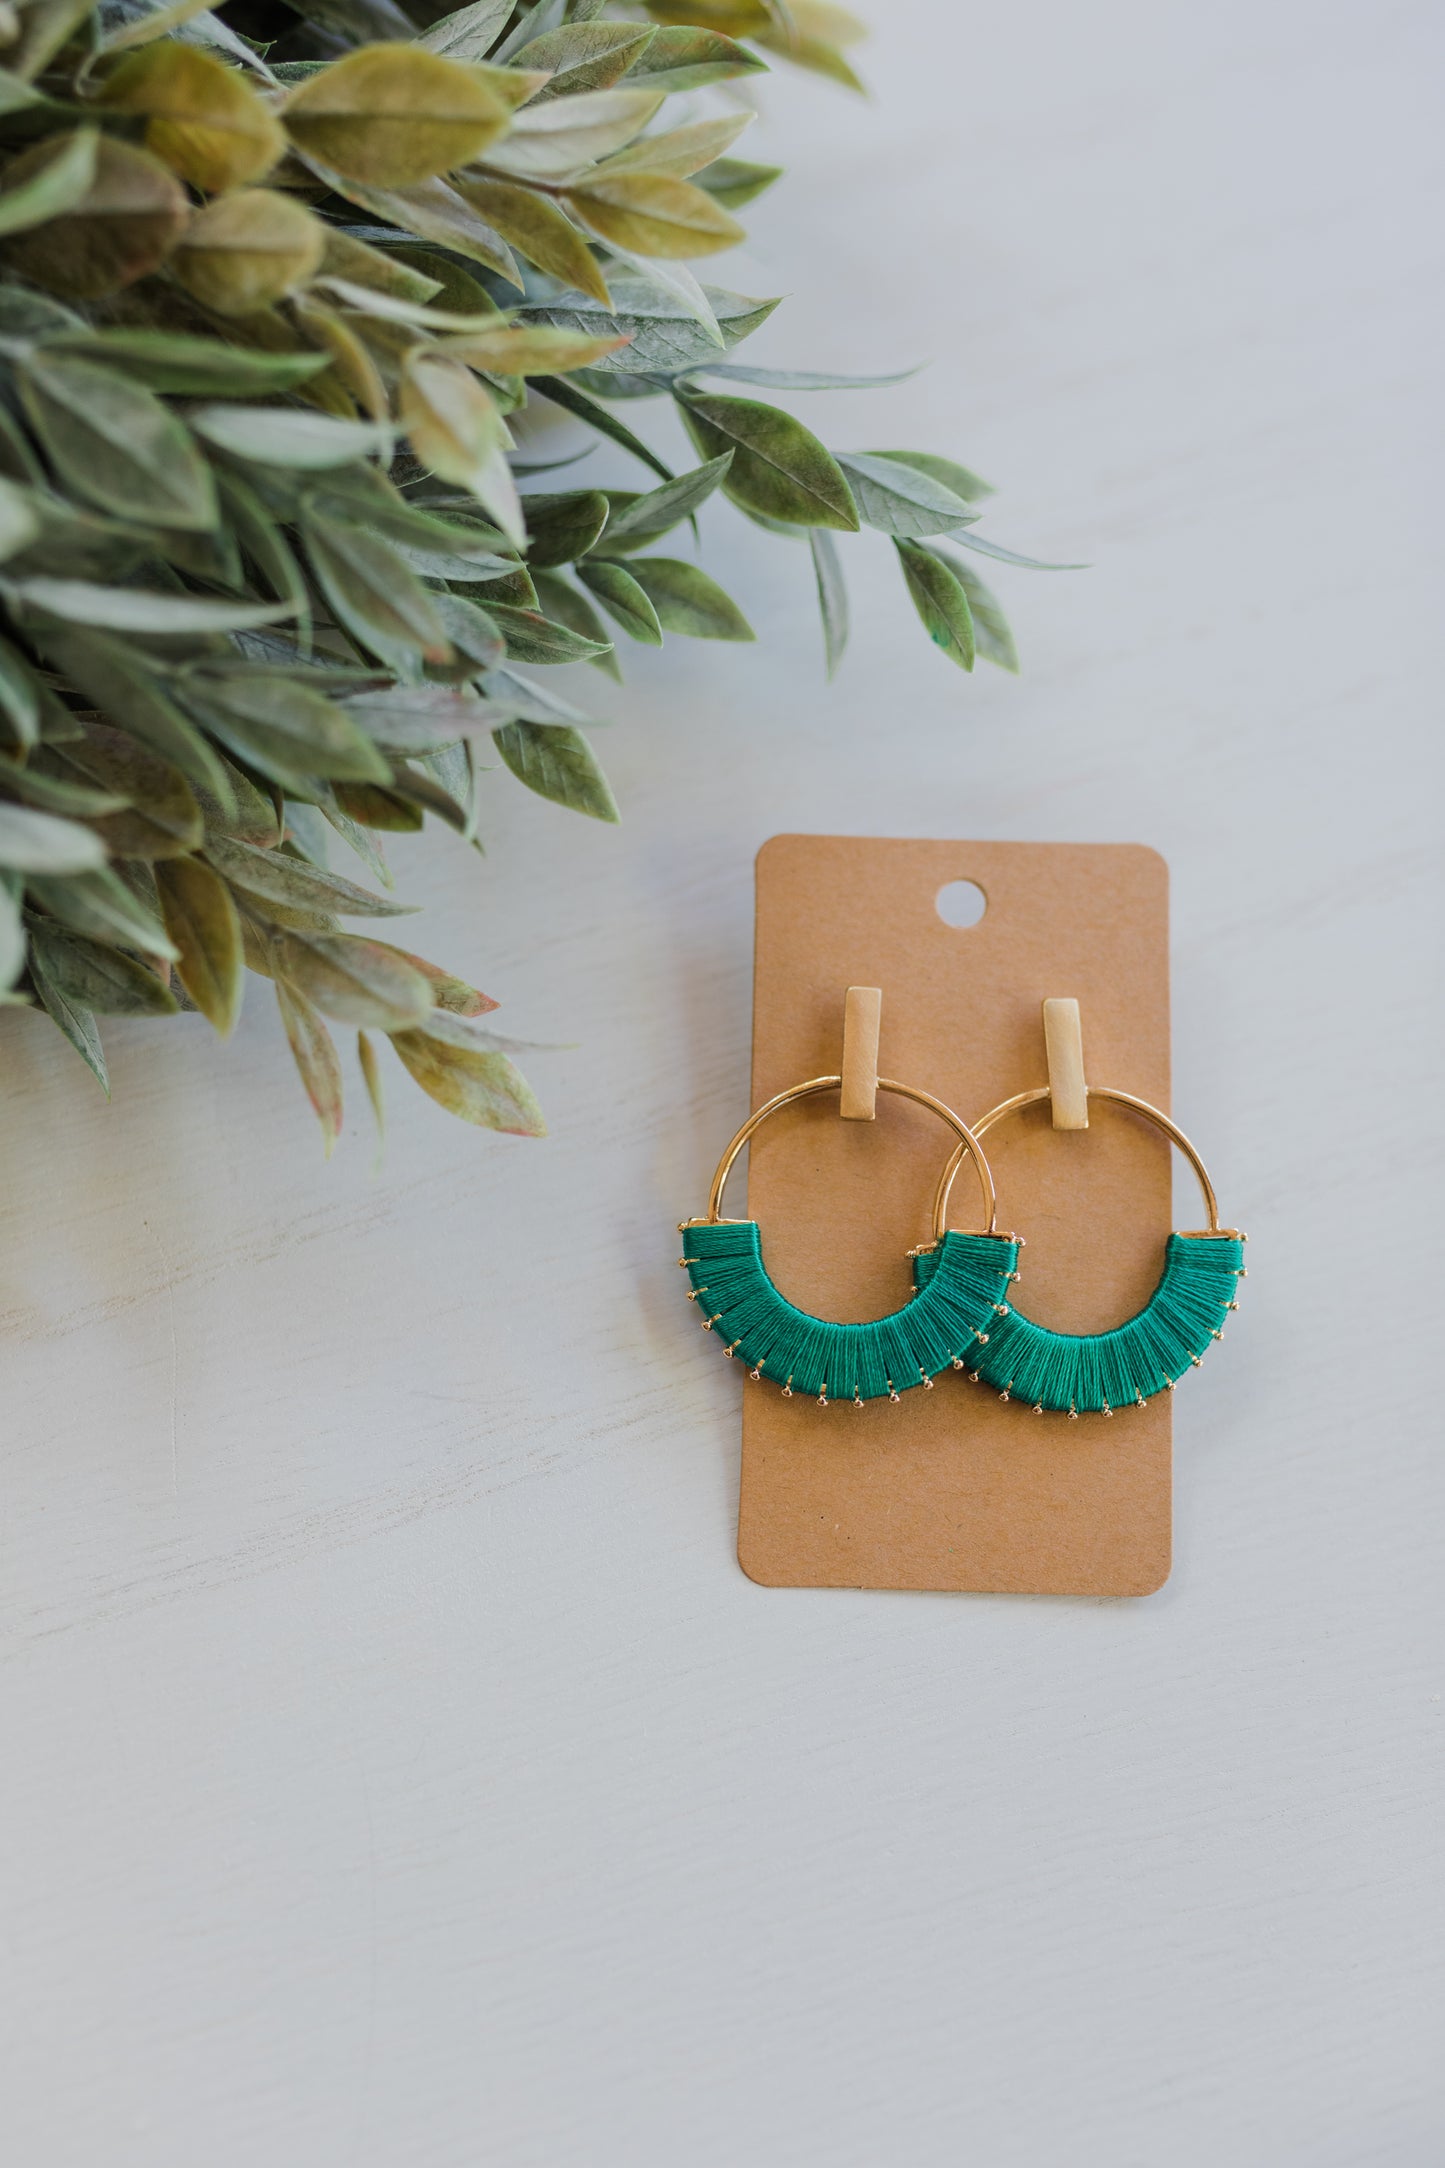 The Emerald Earrings